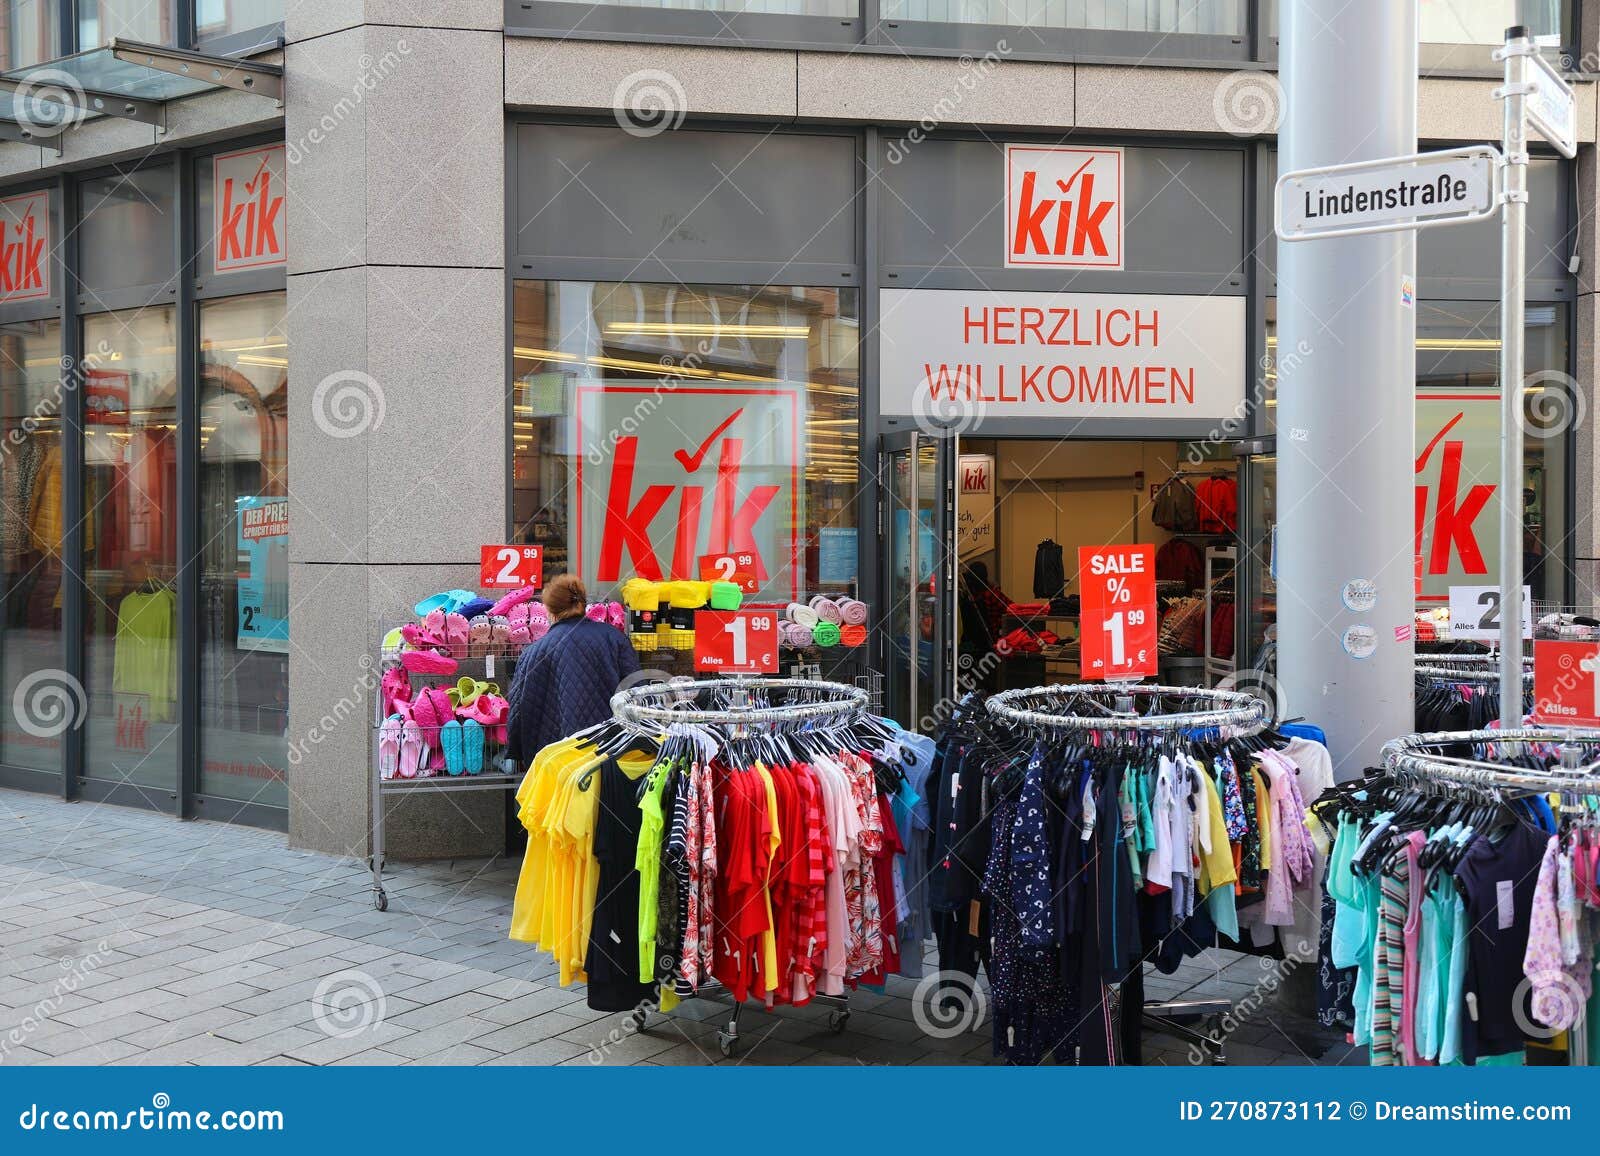 Kik Discount Bekleidungsgeschäft in Deutschland Redaktionelles Stockfotografie - Bild 270873112